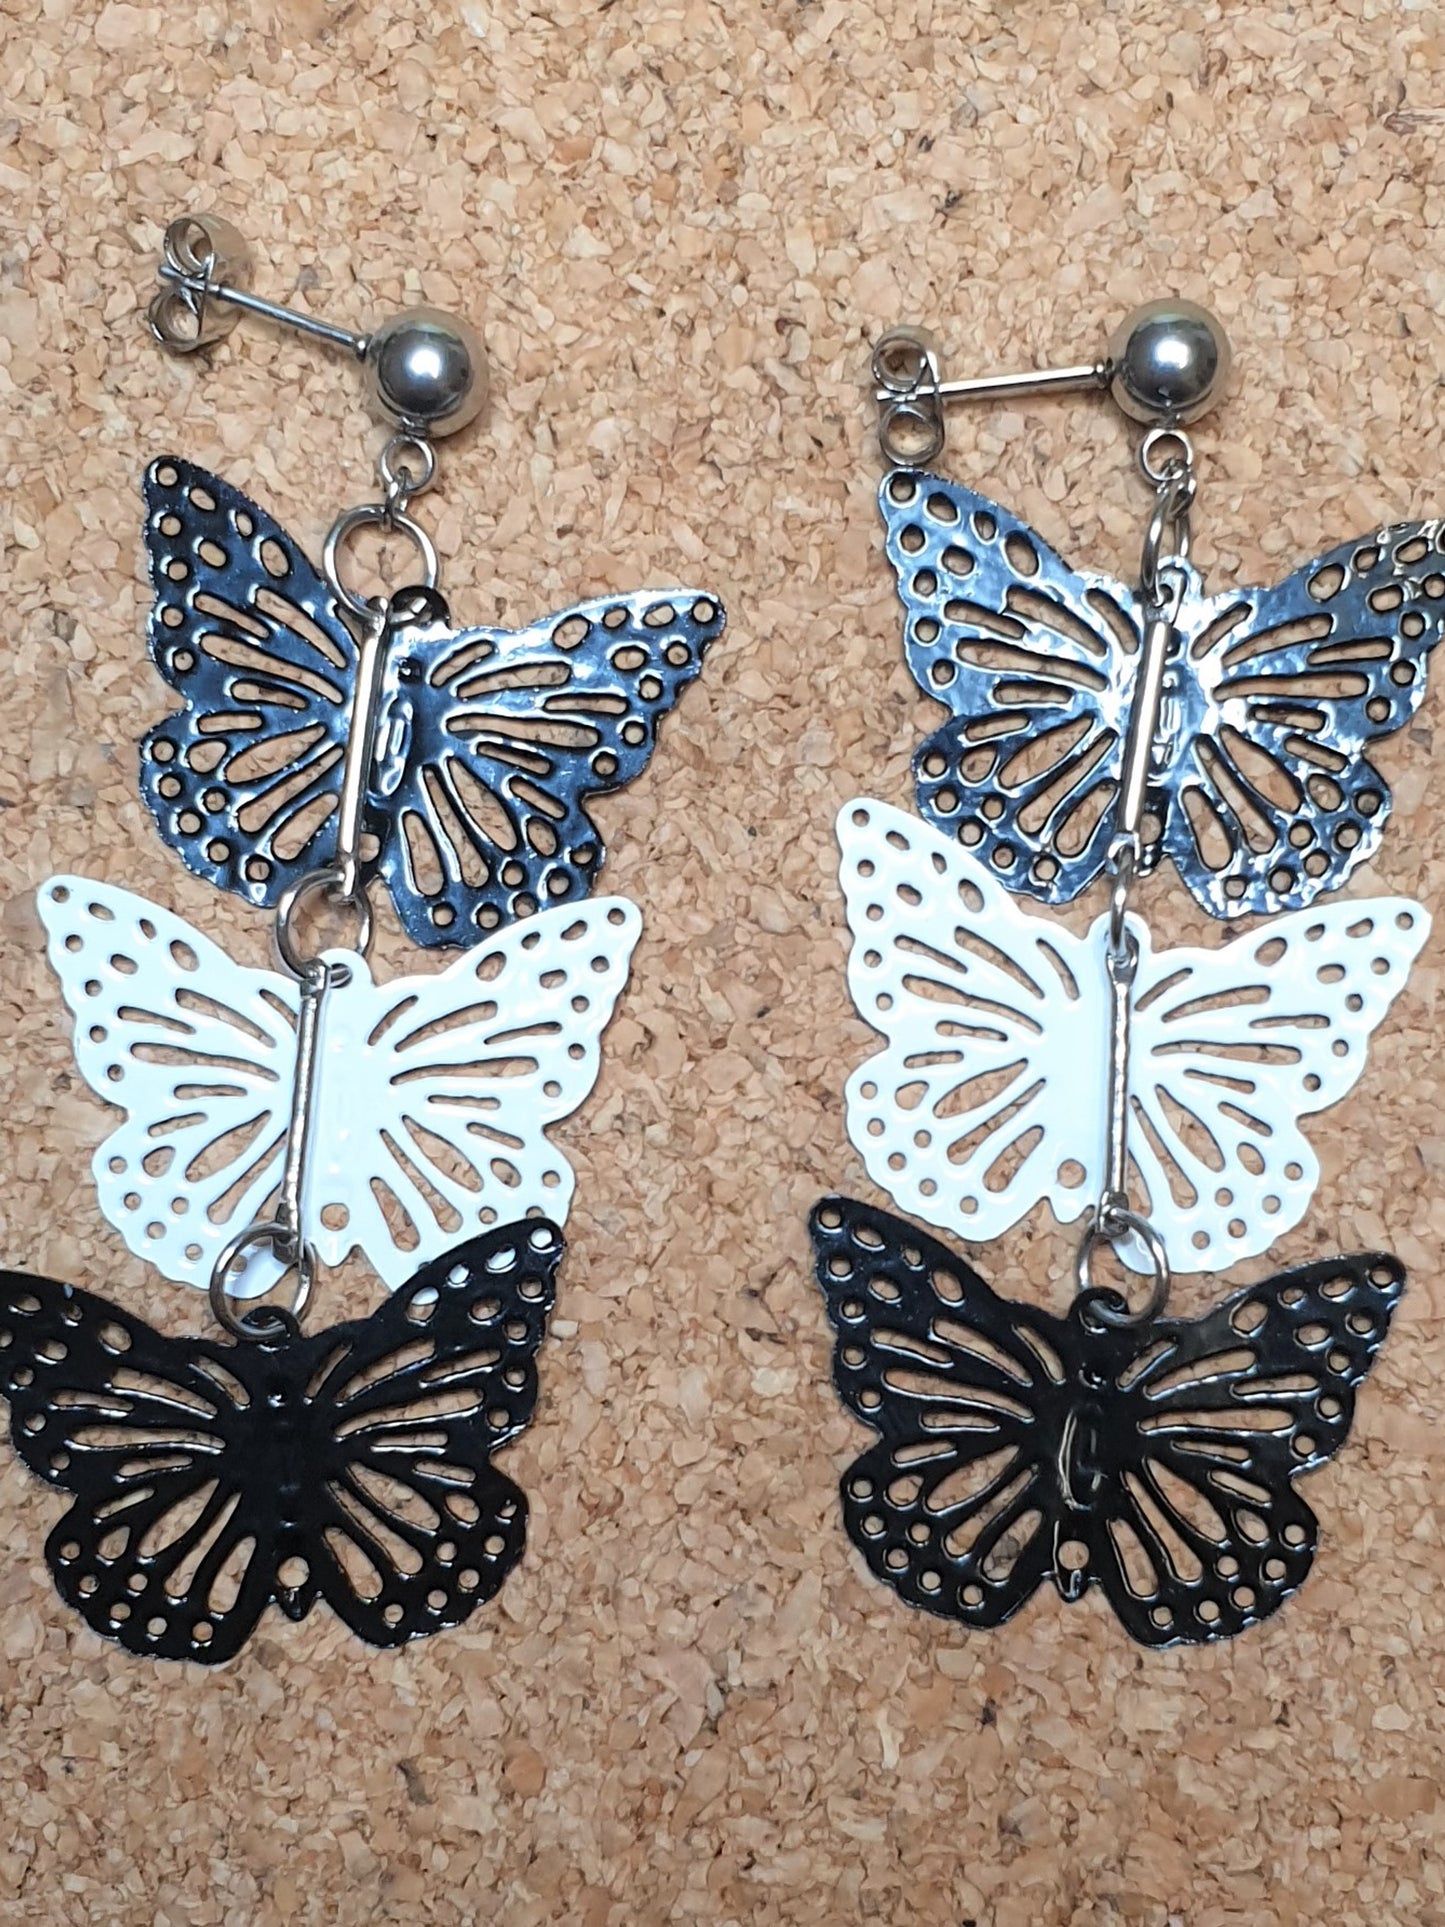 Black & White Butterflies earrings